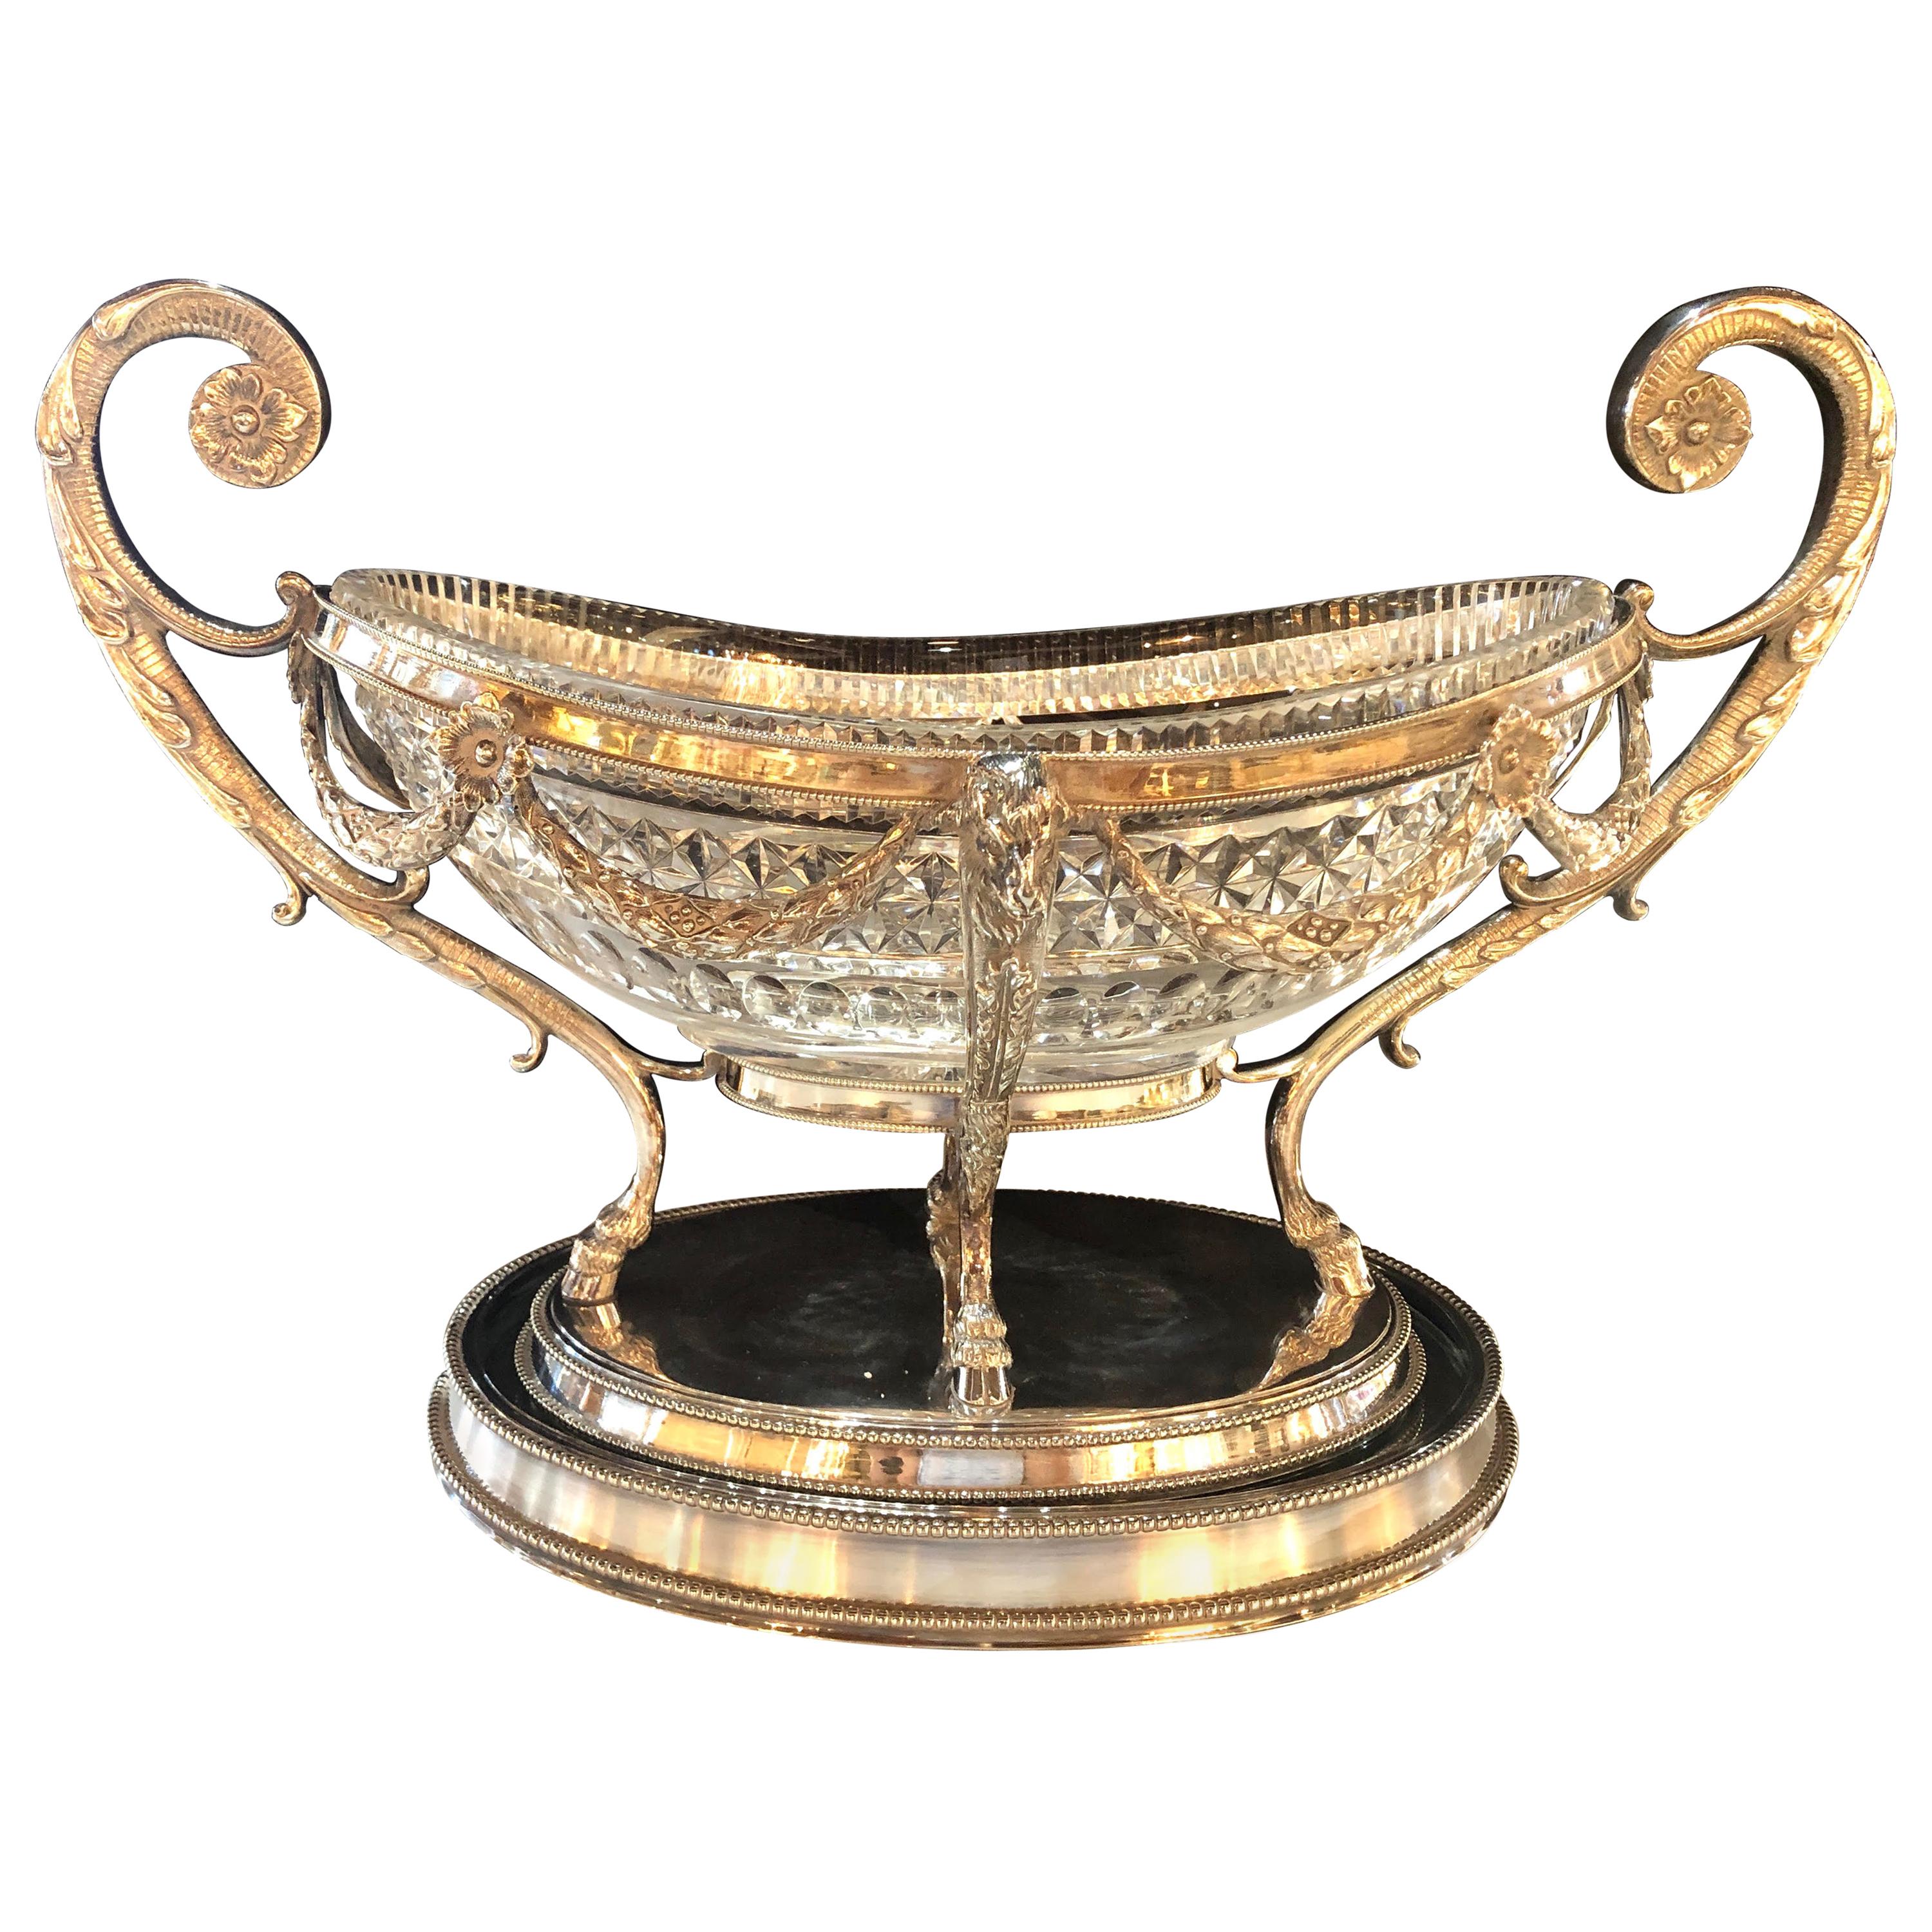 Versilberte ovale Schale im George-III-Stil mit geschliffenem Glasleinen